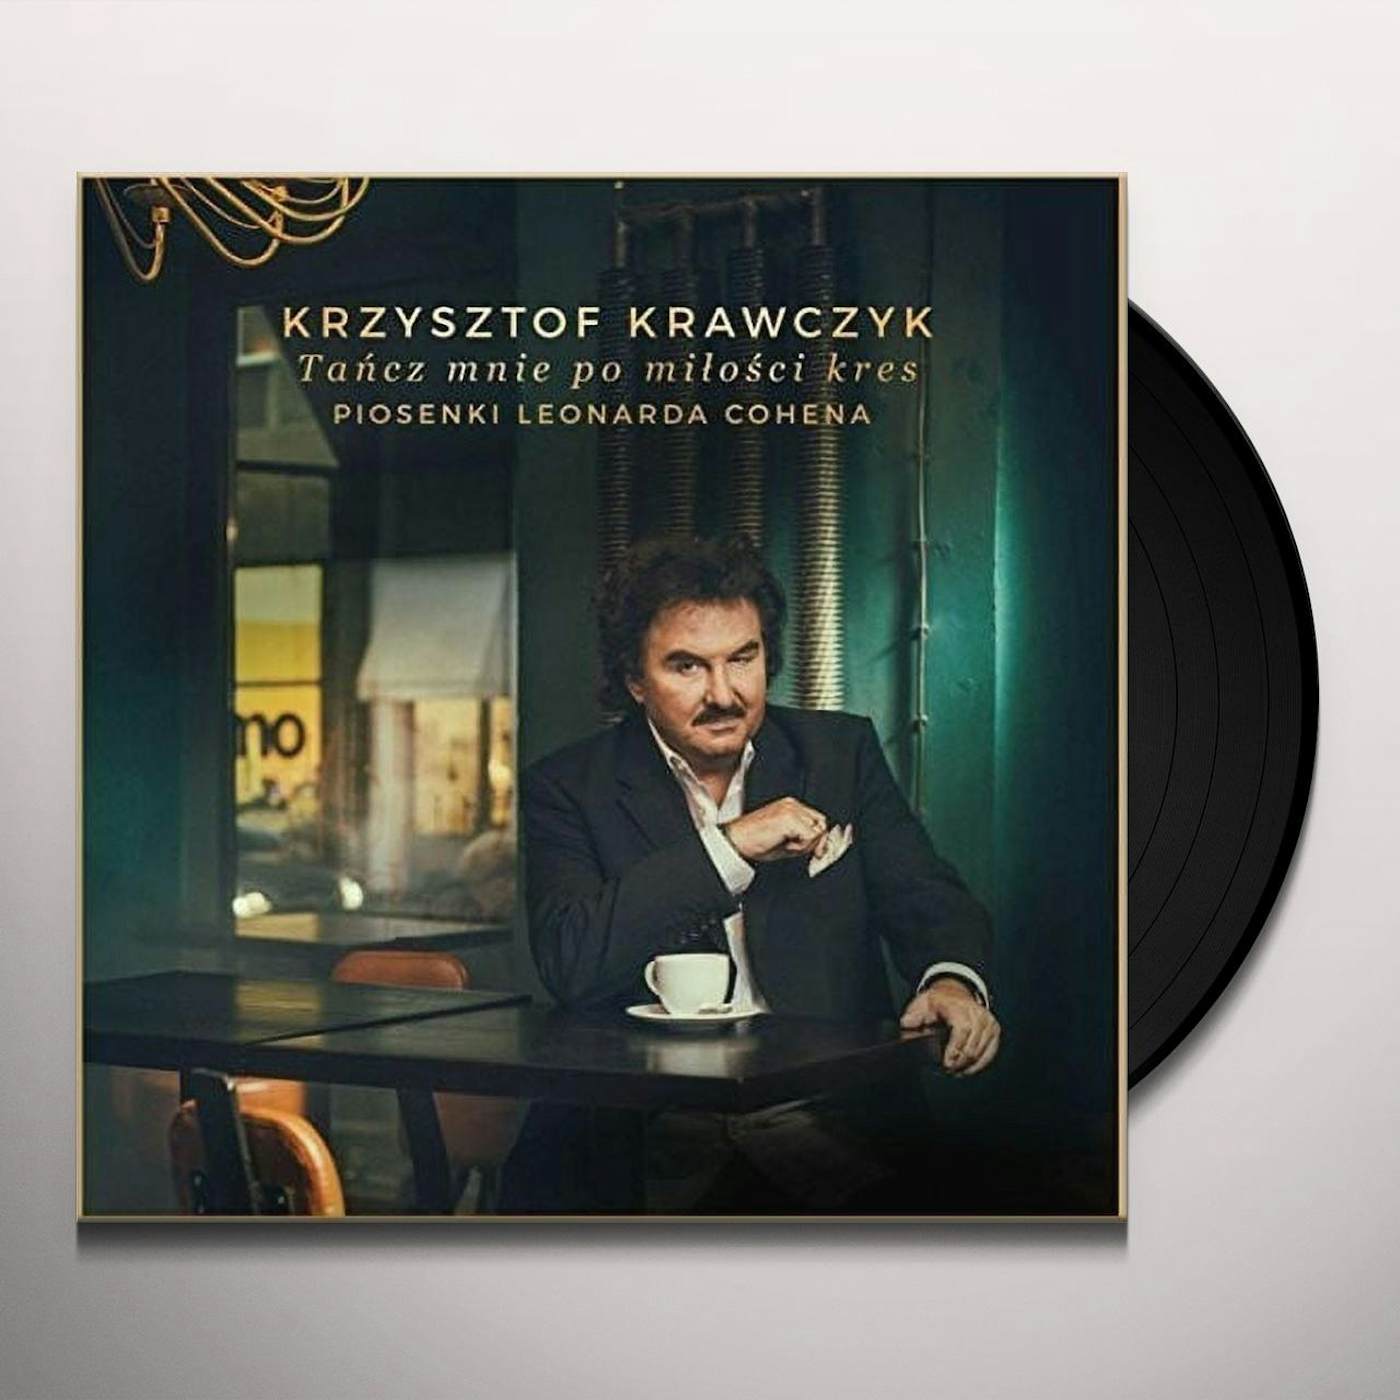 Krzysztof Krawczyk TANCZ MNIE PO MILOSCI KRES. PIOSENKI LEO Vinyl Record